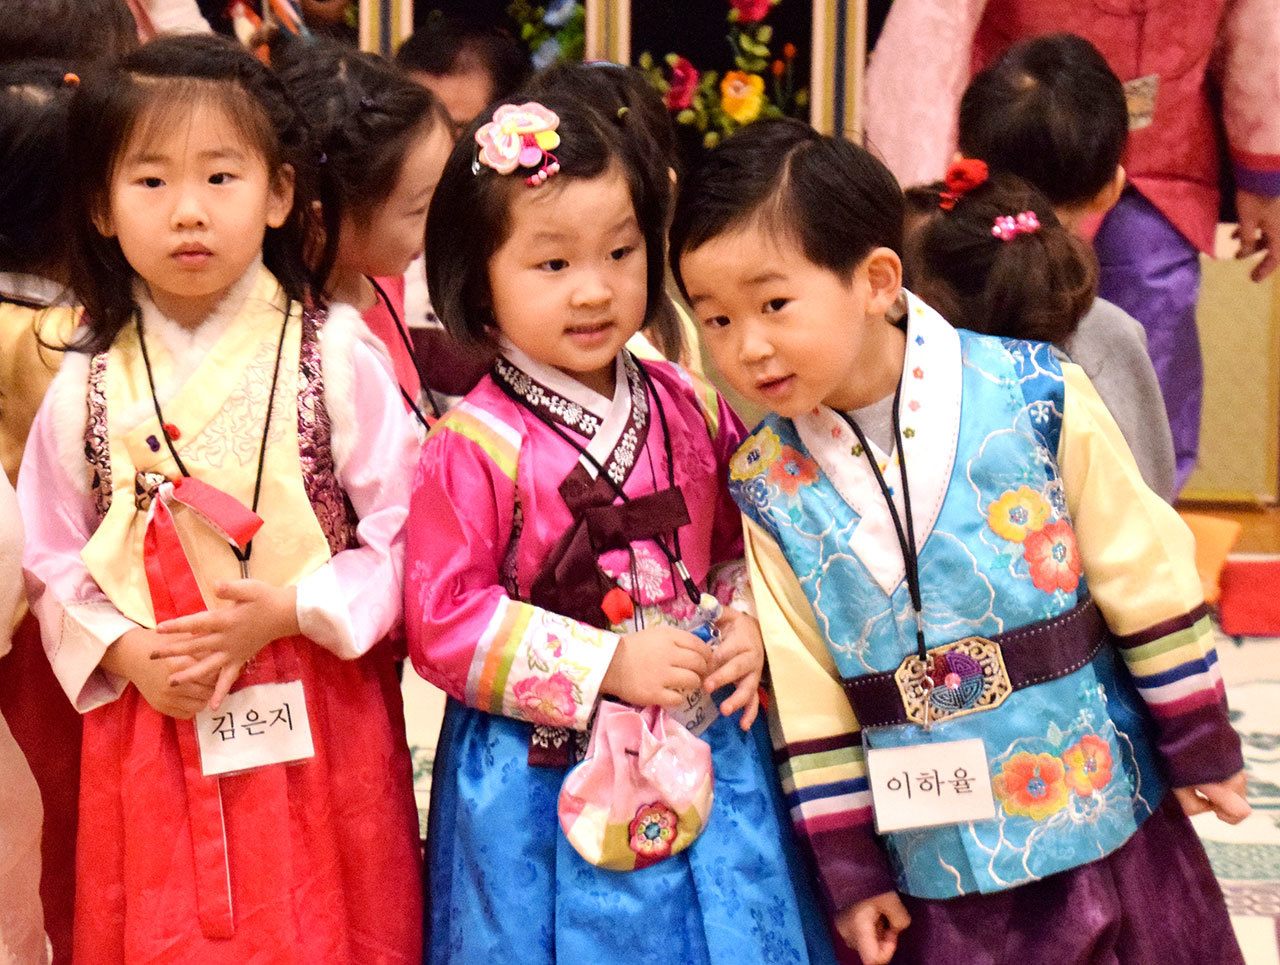 Federal Way Korean School celebrates Lunar New Year